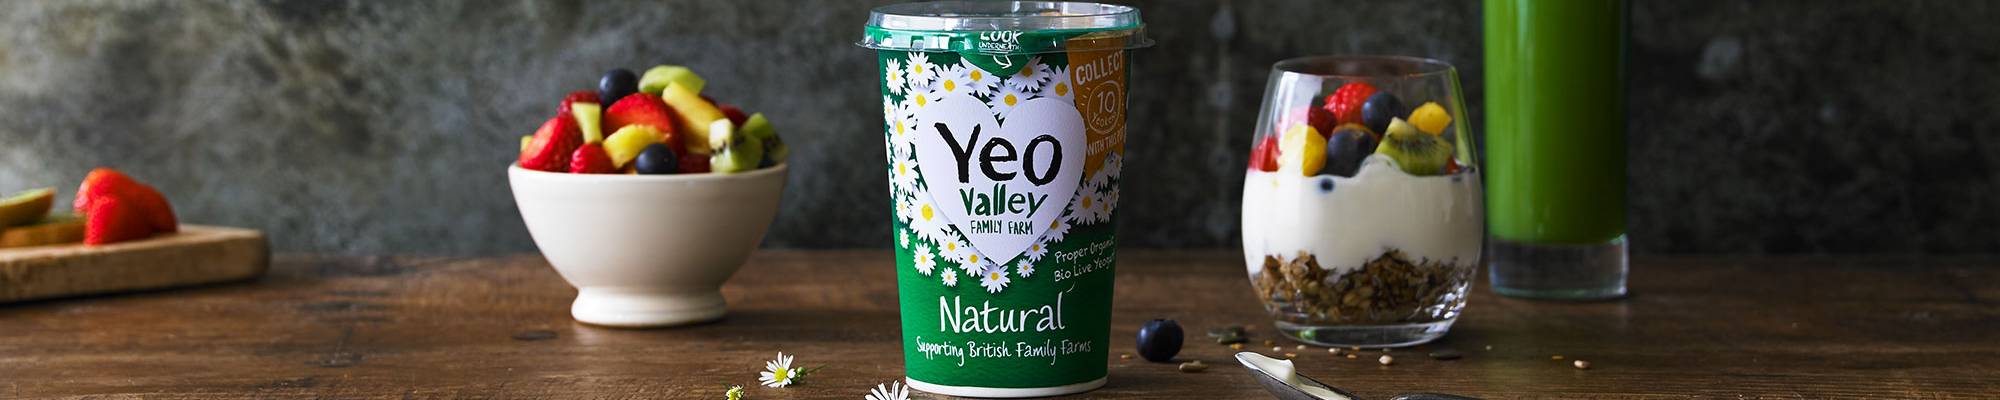 yeo valley organic natural yogurt made in somerset